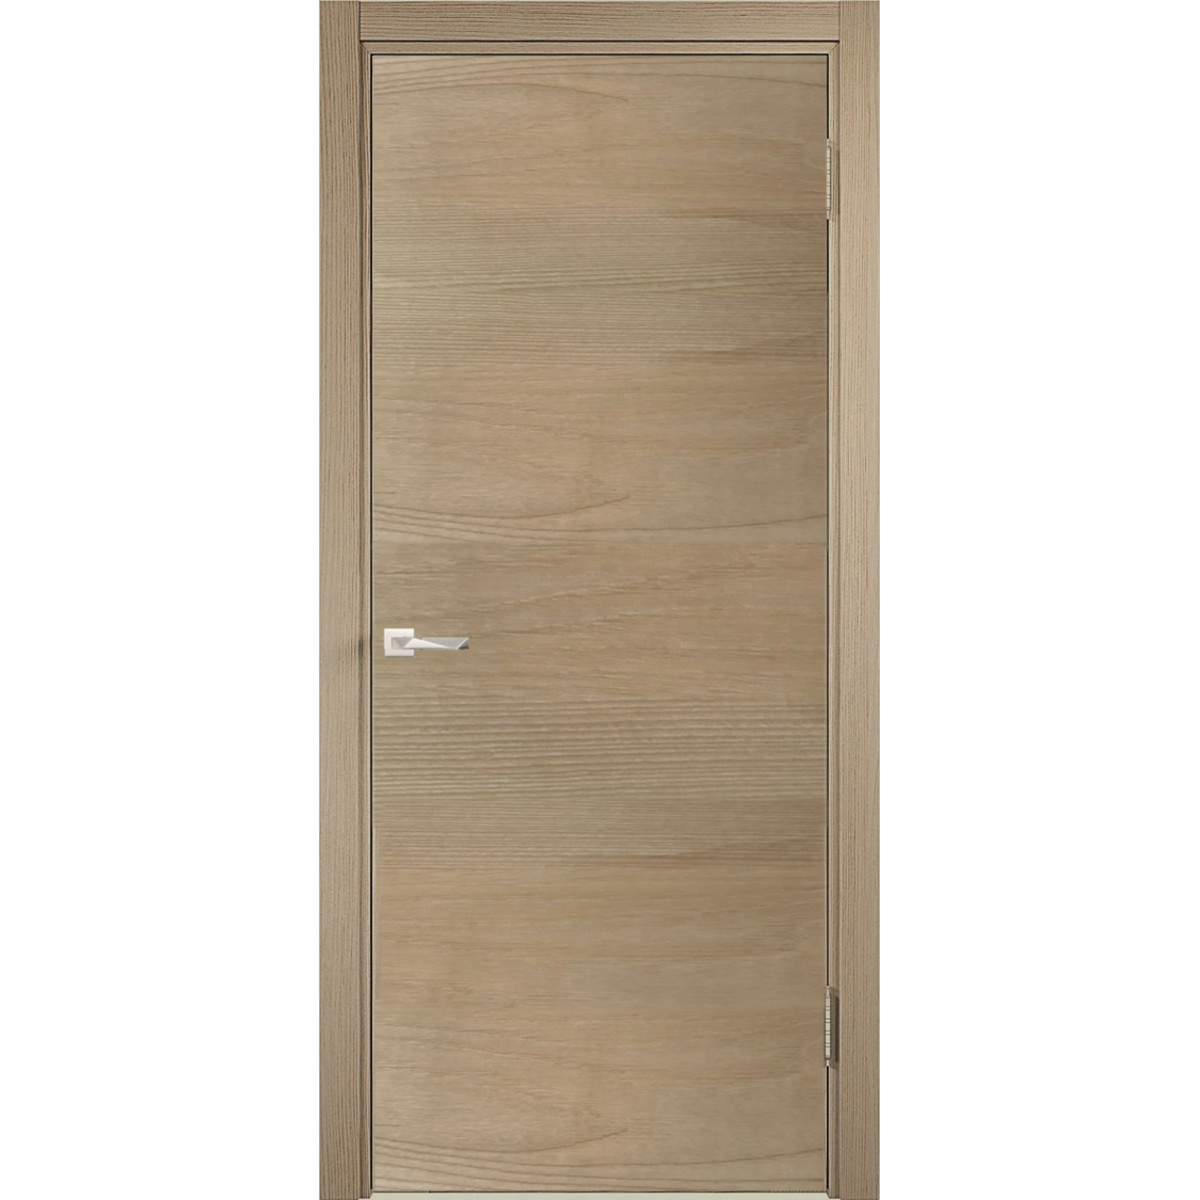 Дверь межкомнатная глухая c замком в комплекте 60x200 см ламинация, цвет ясень коричневый